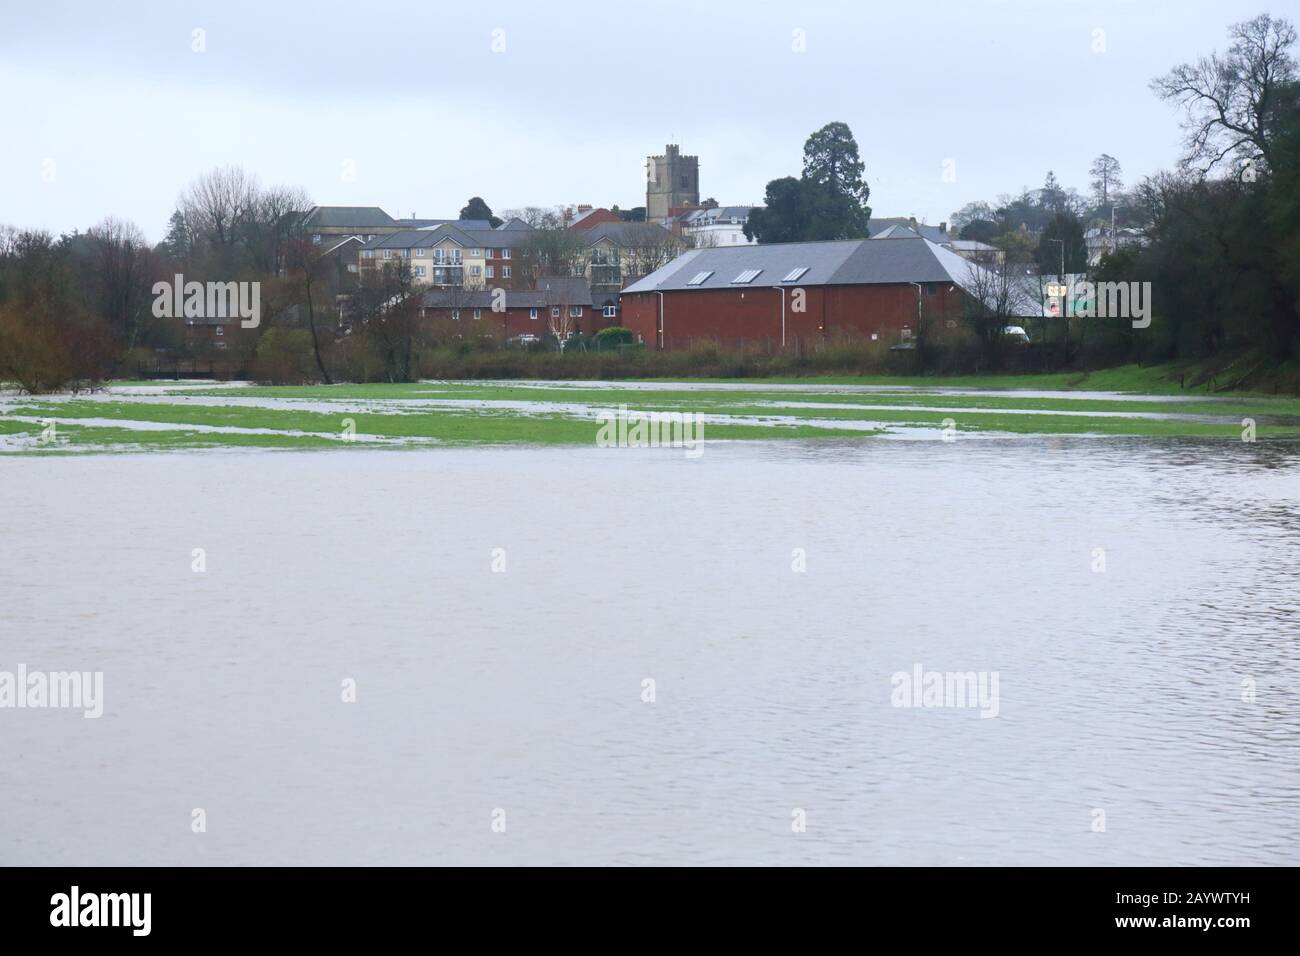 A inondé la vallée d'Ax dans East Devon, au Royaume-Uni pendant la tempête Dennis. Champs agricoles autour de la rivière Ax près de la ville d'Axminster. Banque D'Images